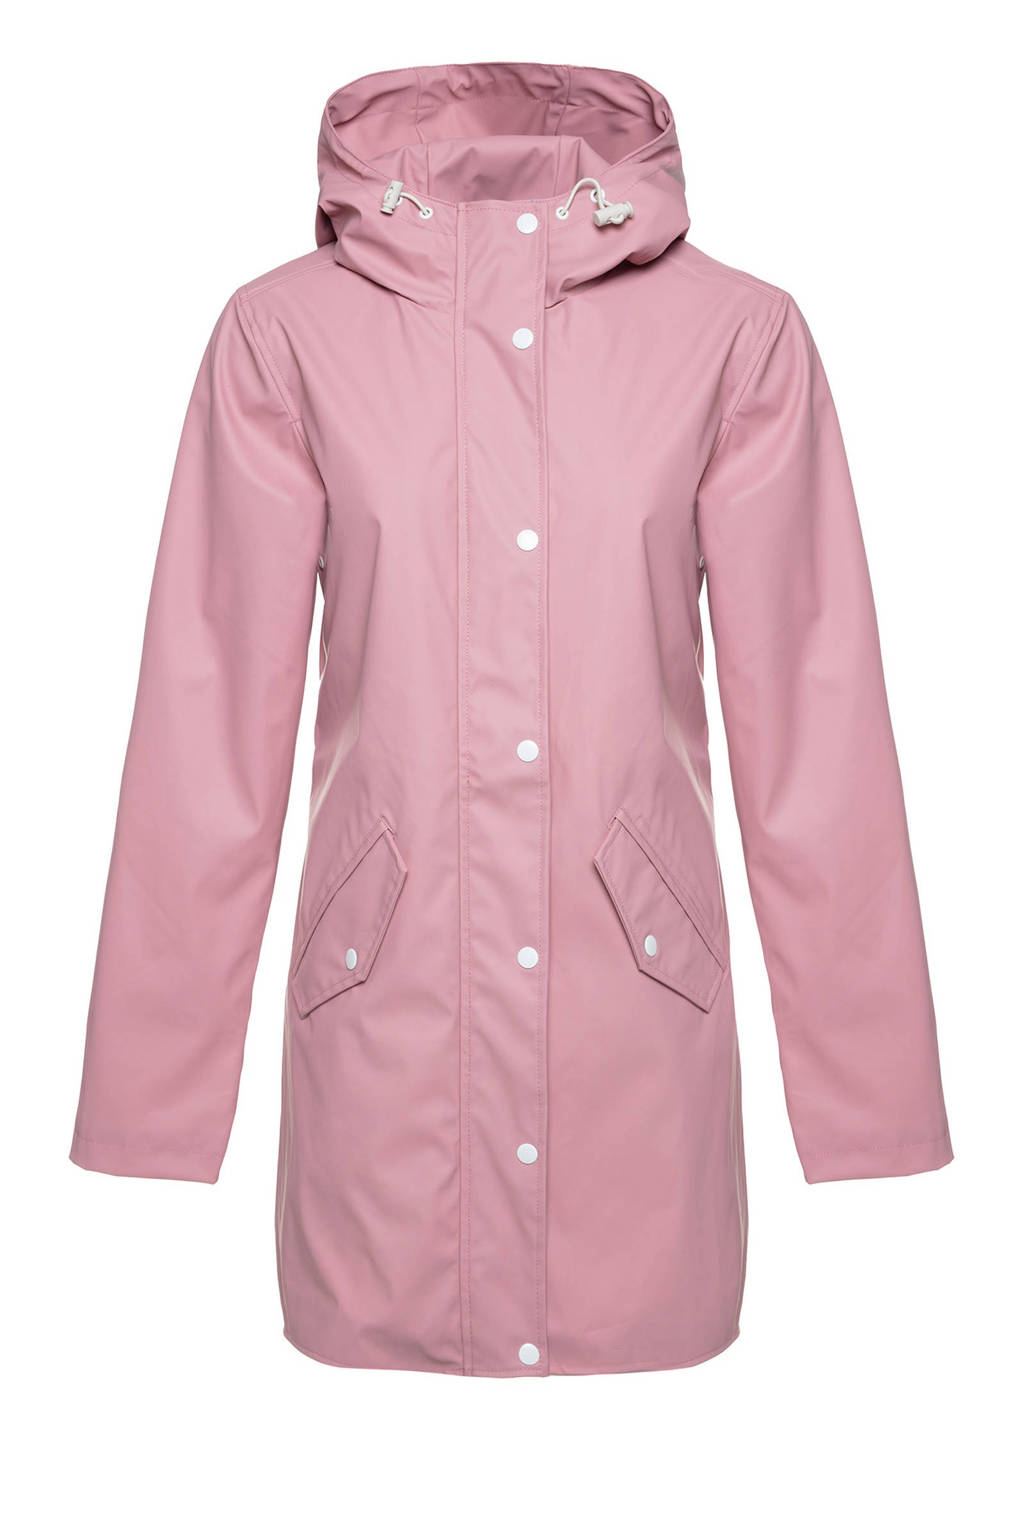 Roze dames Scapino outdoor jas van polyester met lange mouwen, capuchon en rits met windvanger